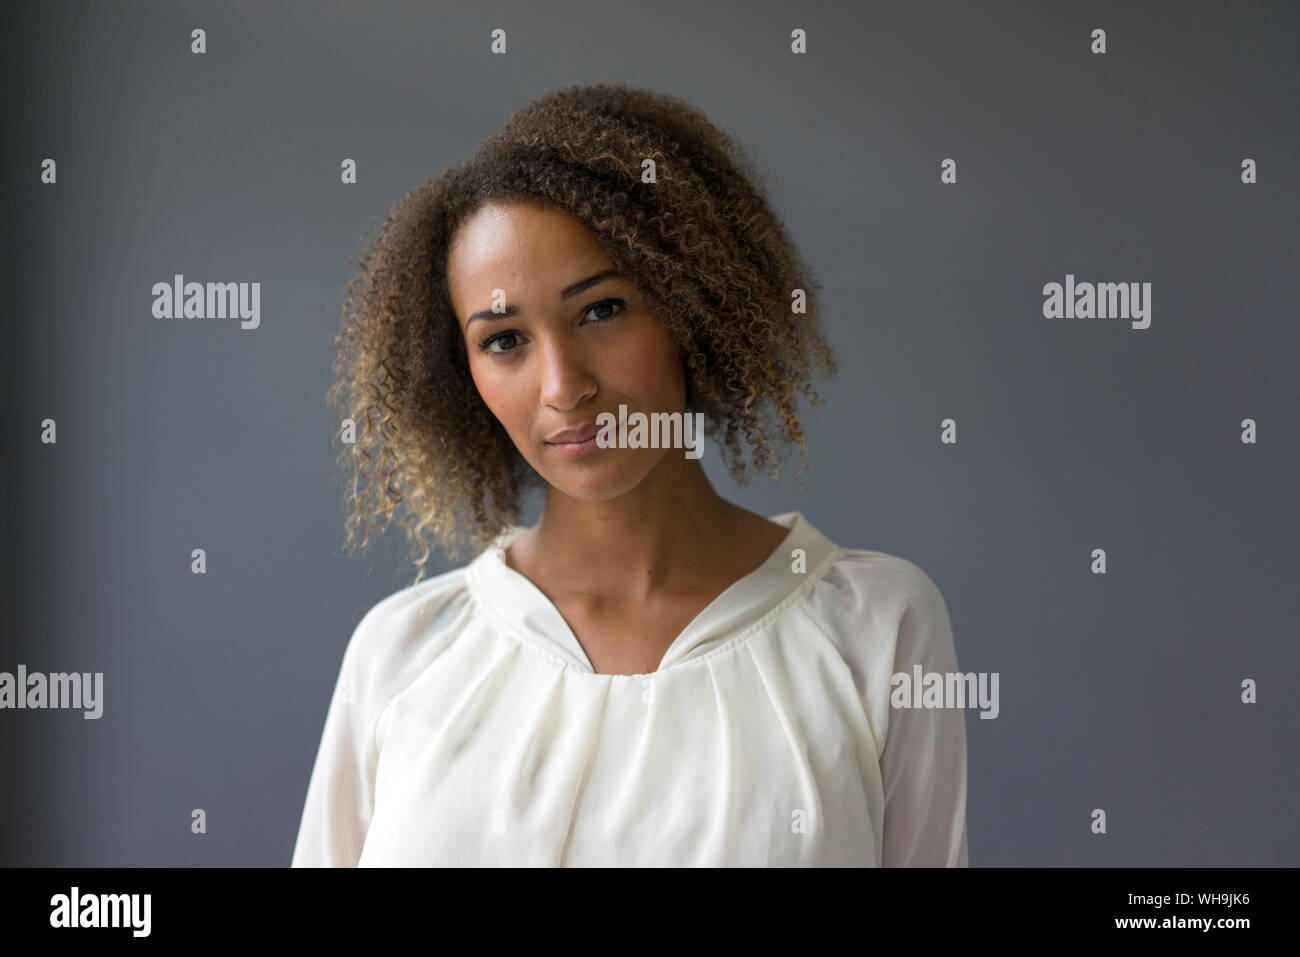 Ritratto di giovane donna che indossa camicia bianca contro lo sfondo grigio Foto Stock